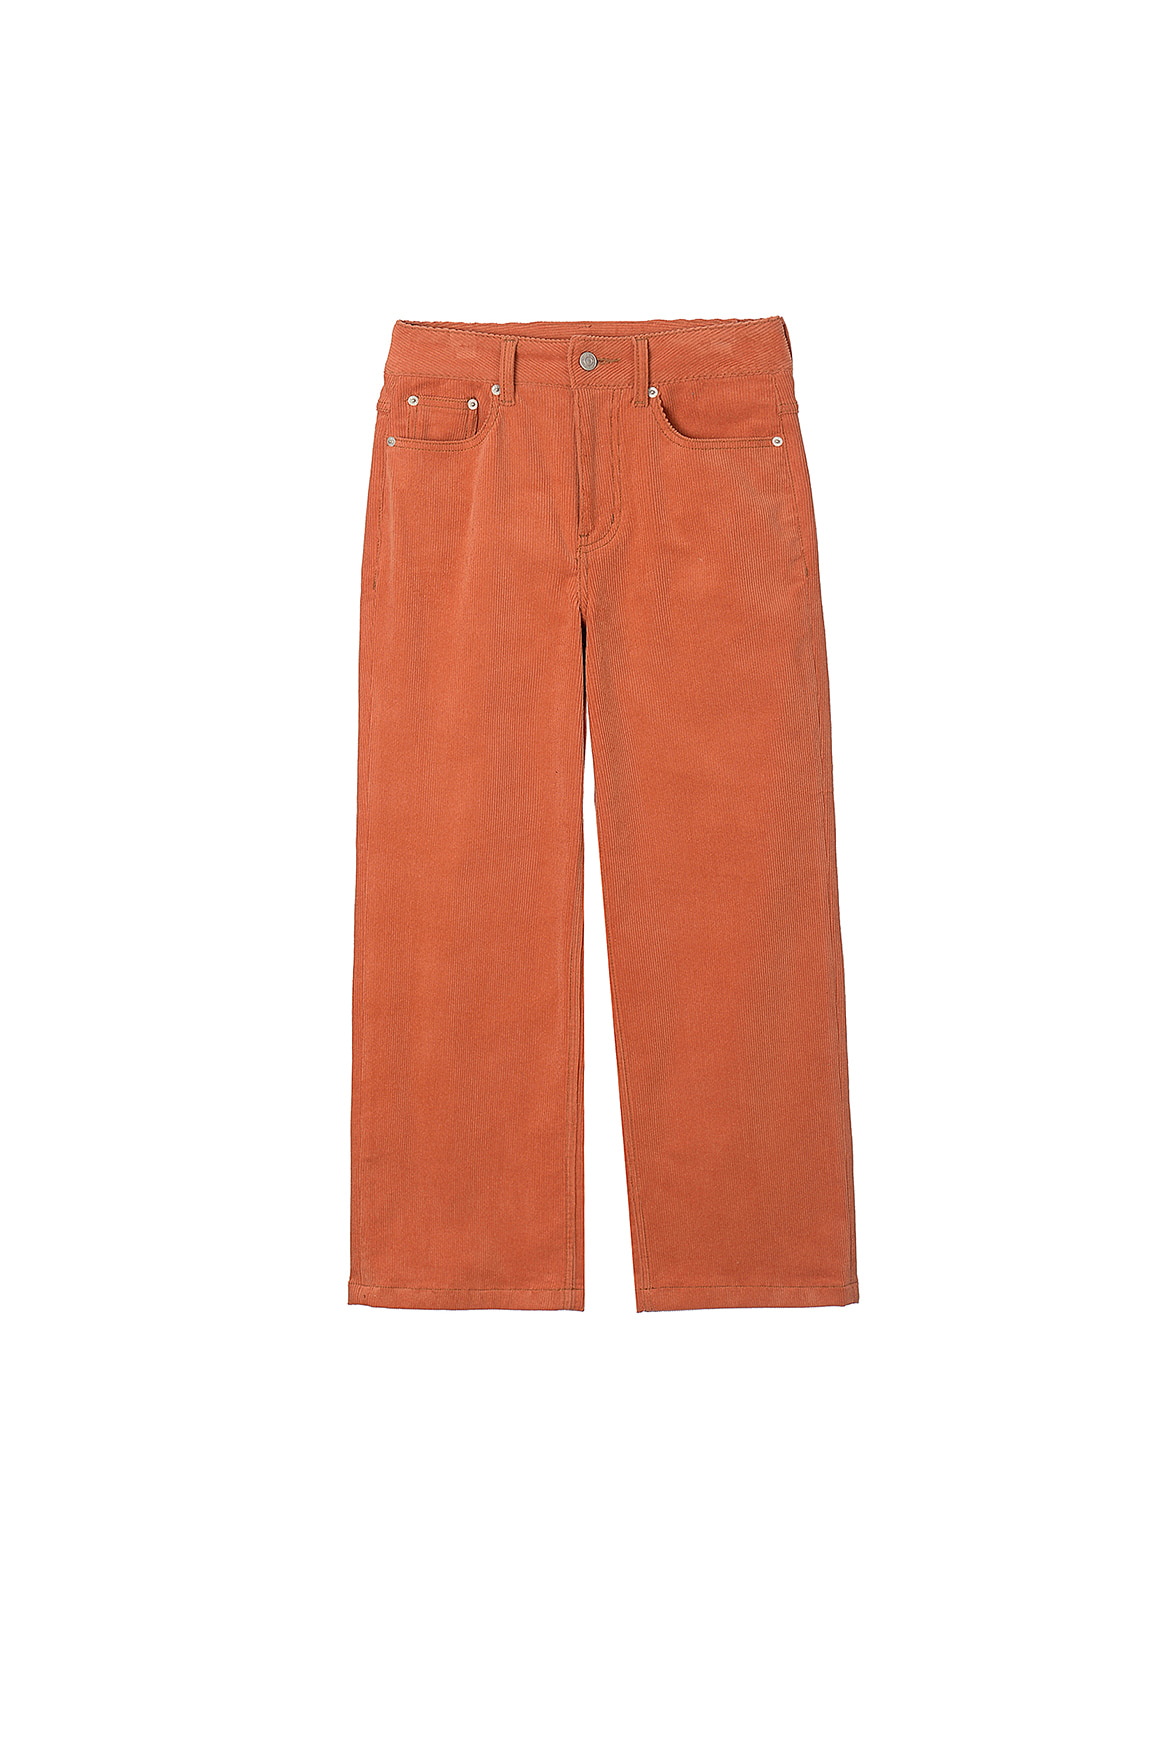 Vintage Corduroy Slim Pants